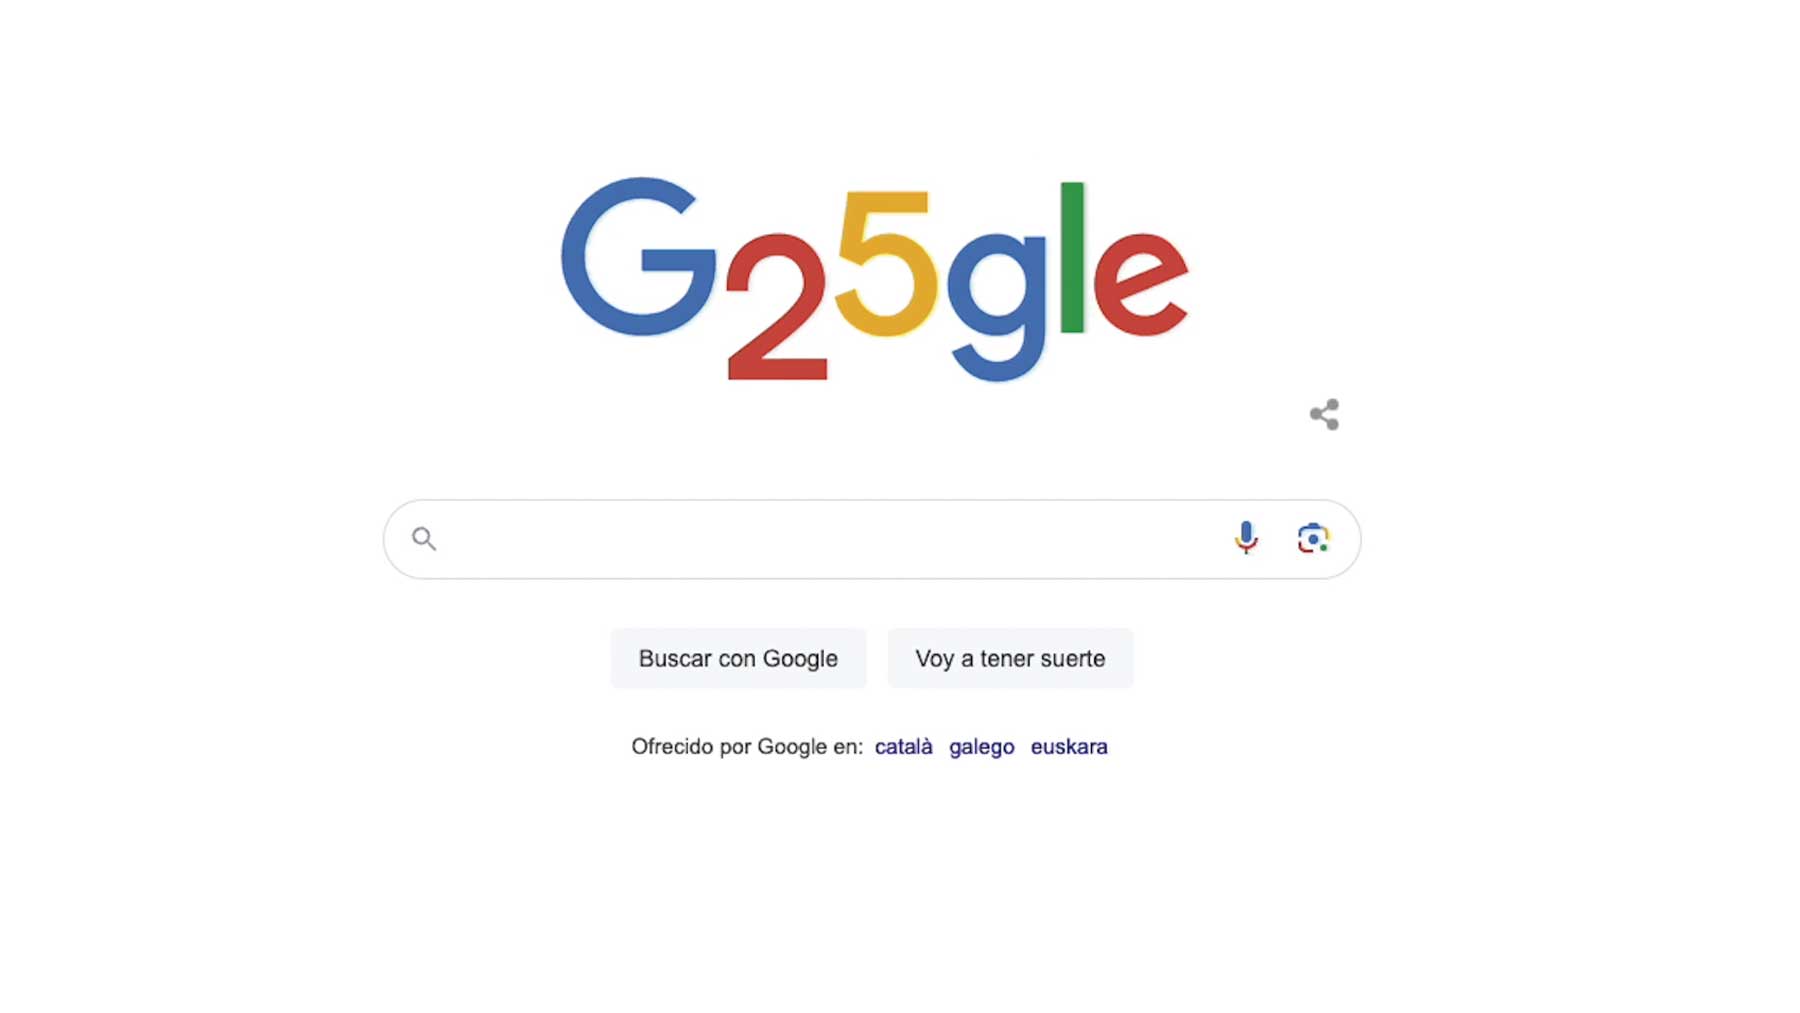 ‘Doodle’ especial de Google por su 25 aniversario.